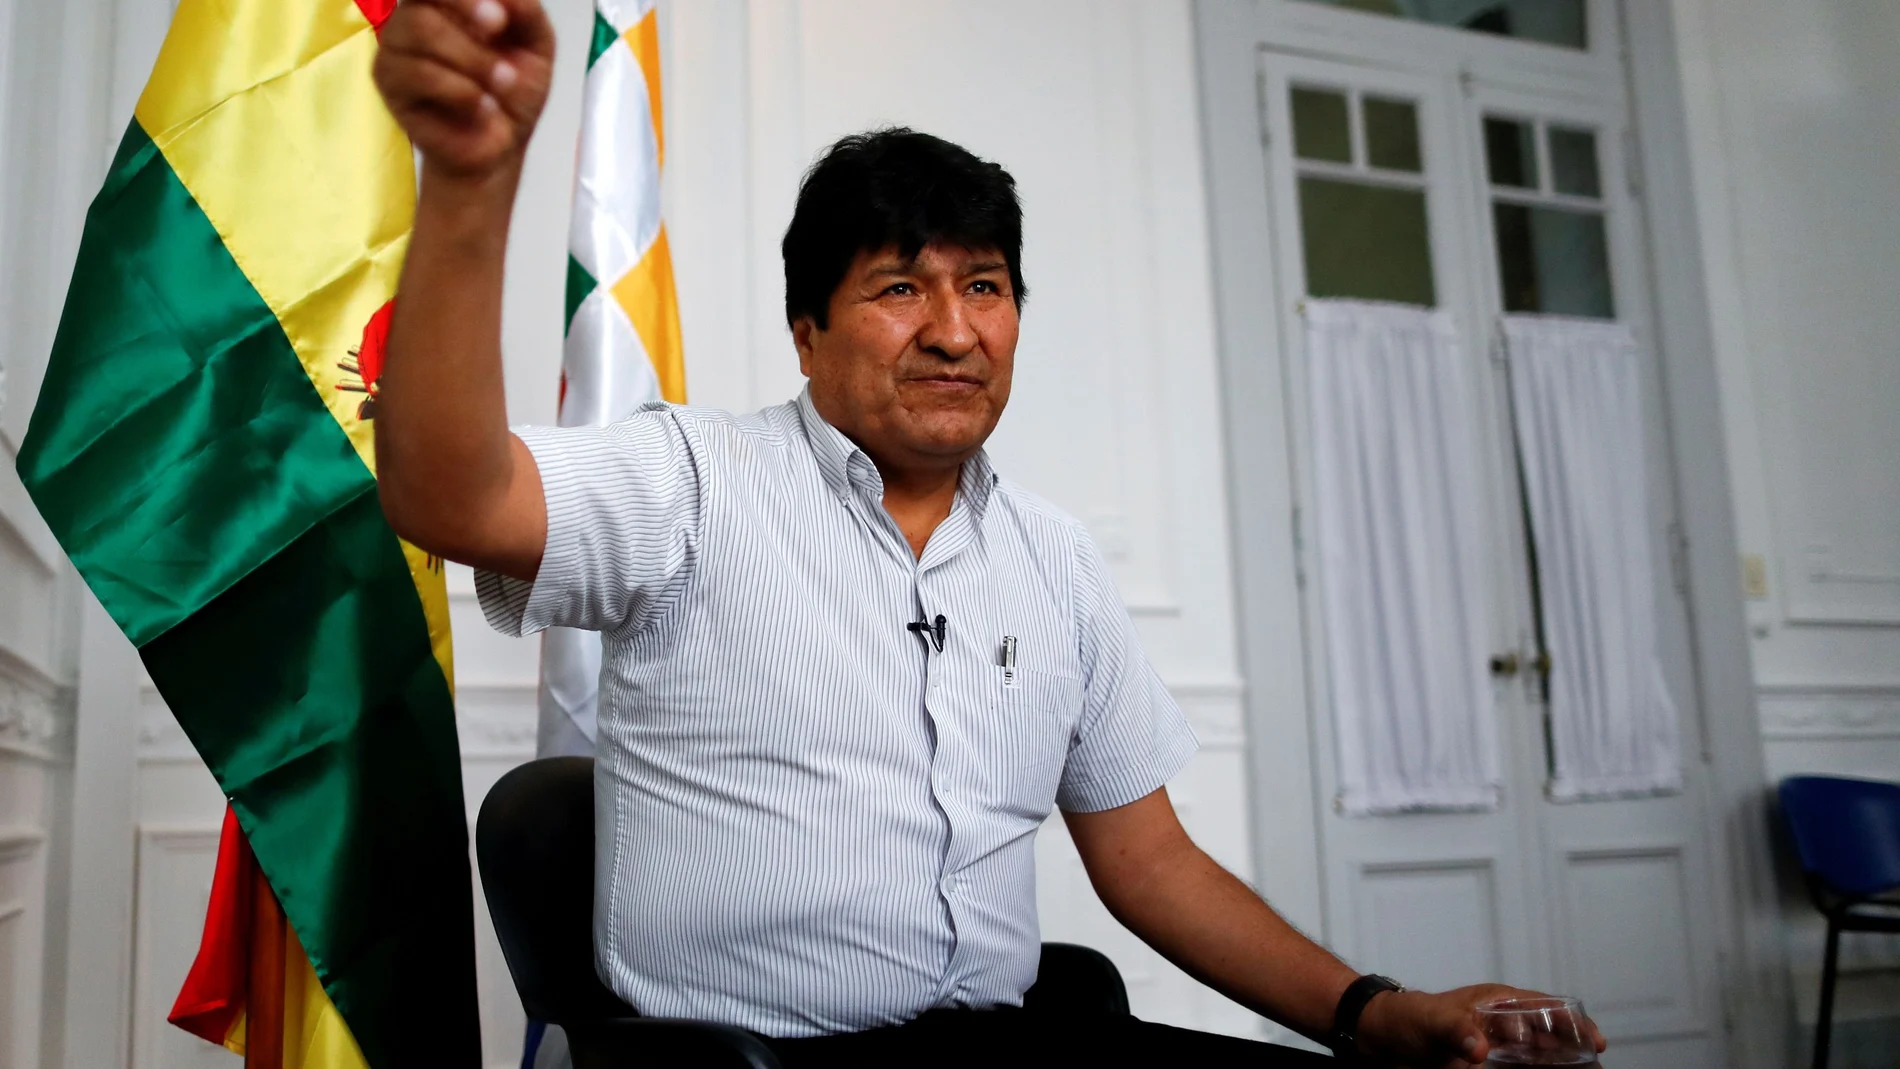 La Justicia boliviana ya ha procesado al ex presidente Evo Morales por sedición y terrorismo